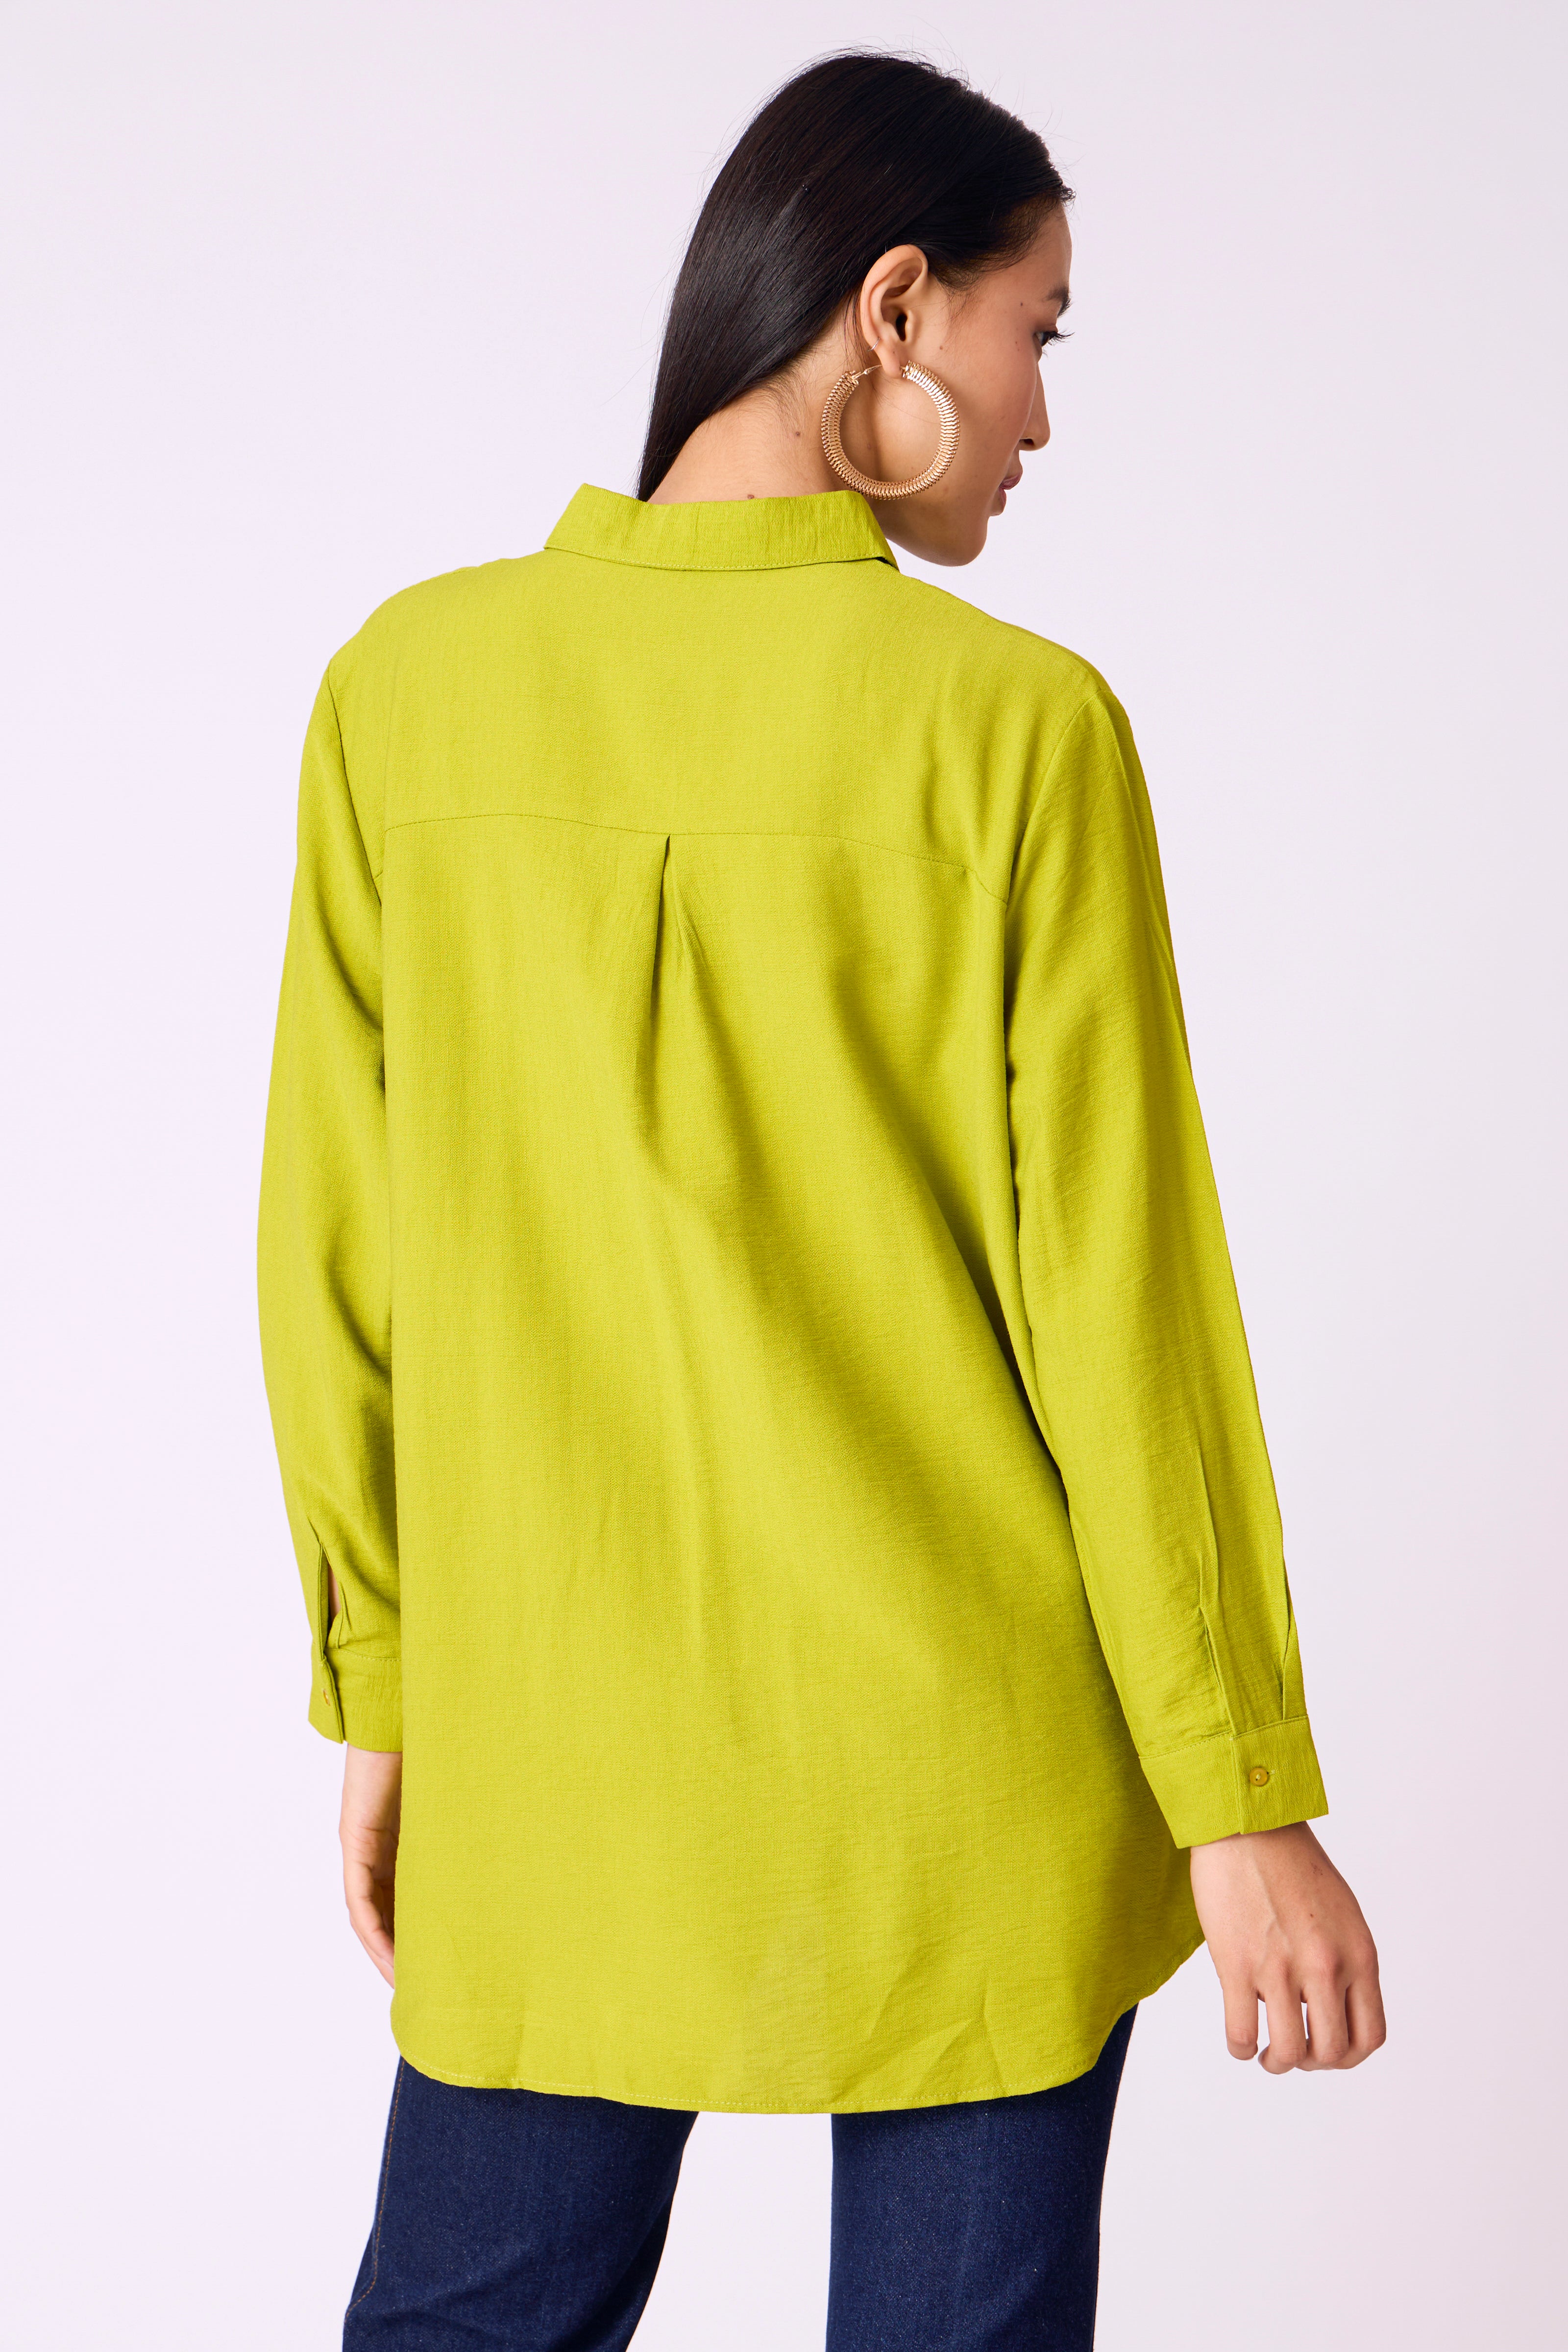 Mira Shirt - Lime Green